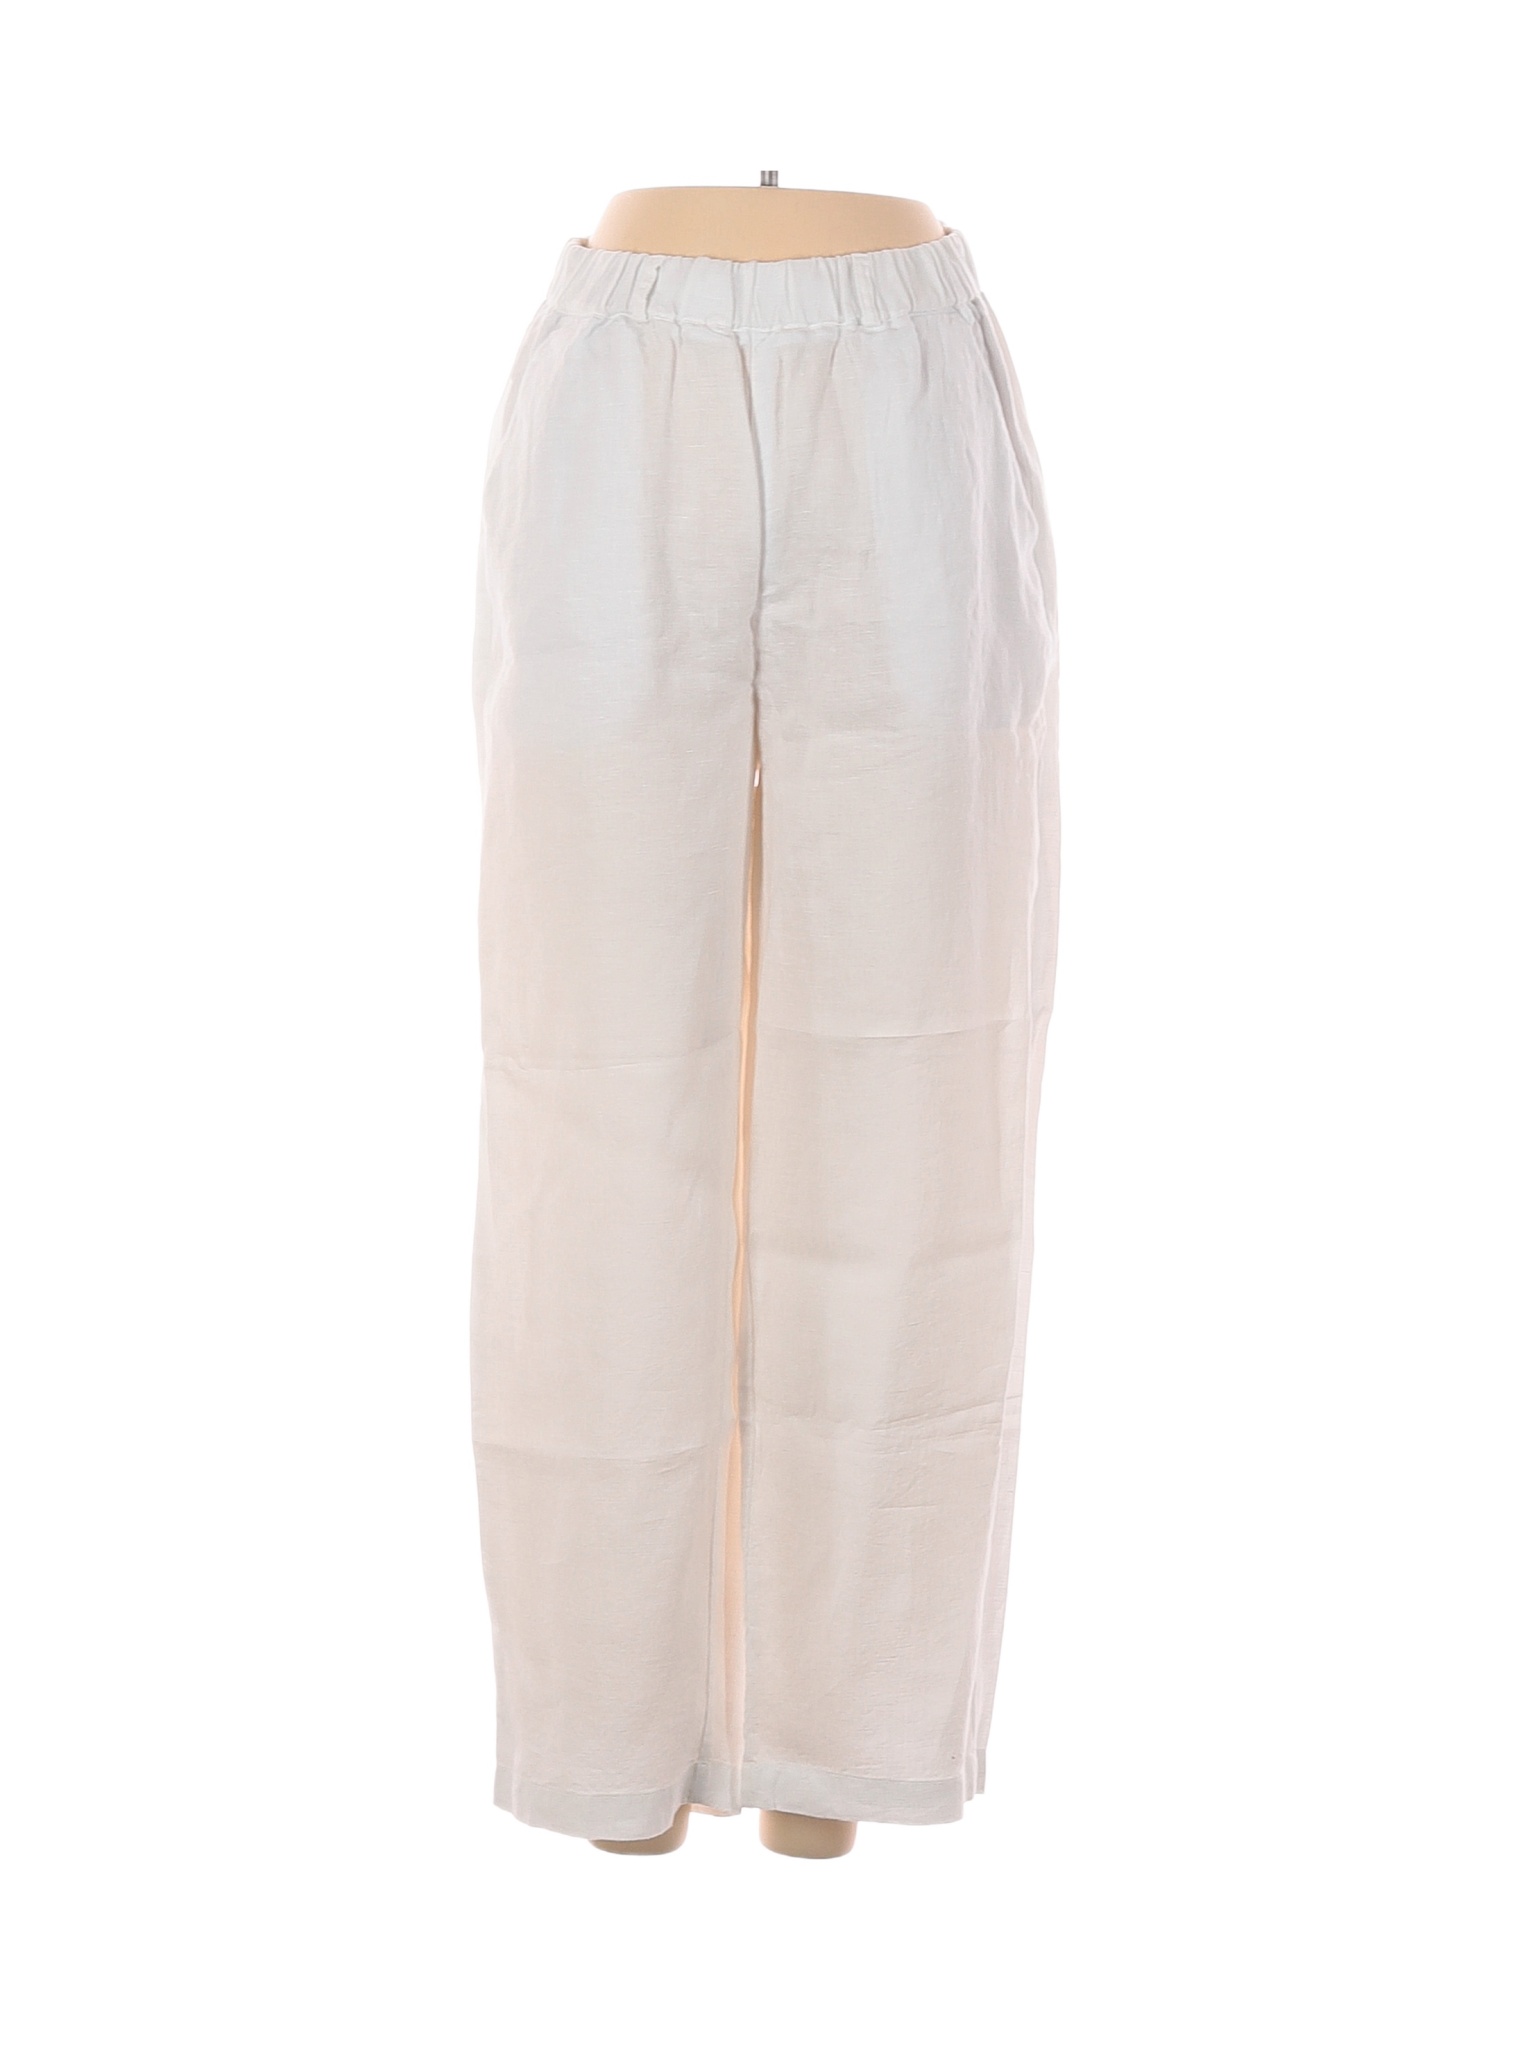 Quince 100% Linen White Linen Pants Size S - 71% off | thredUP